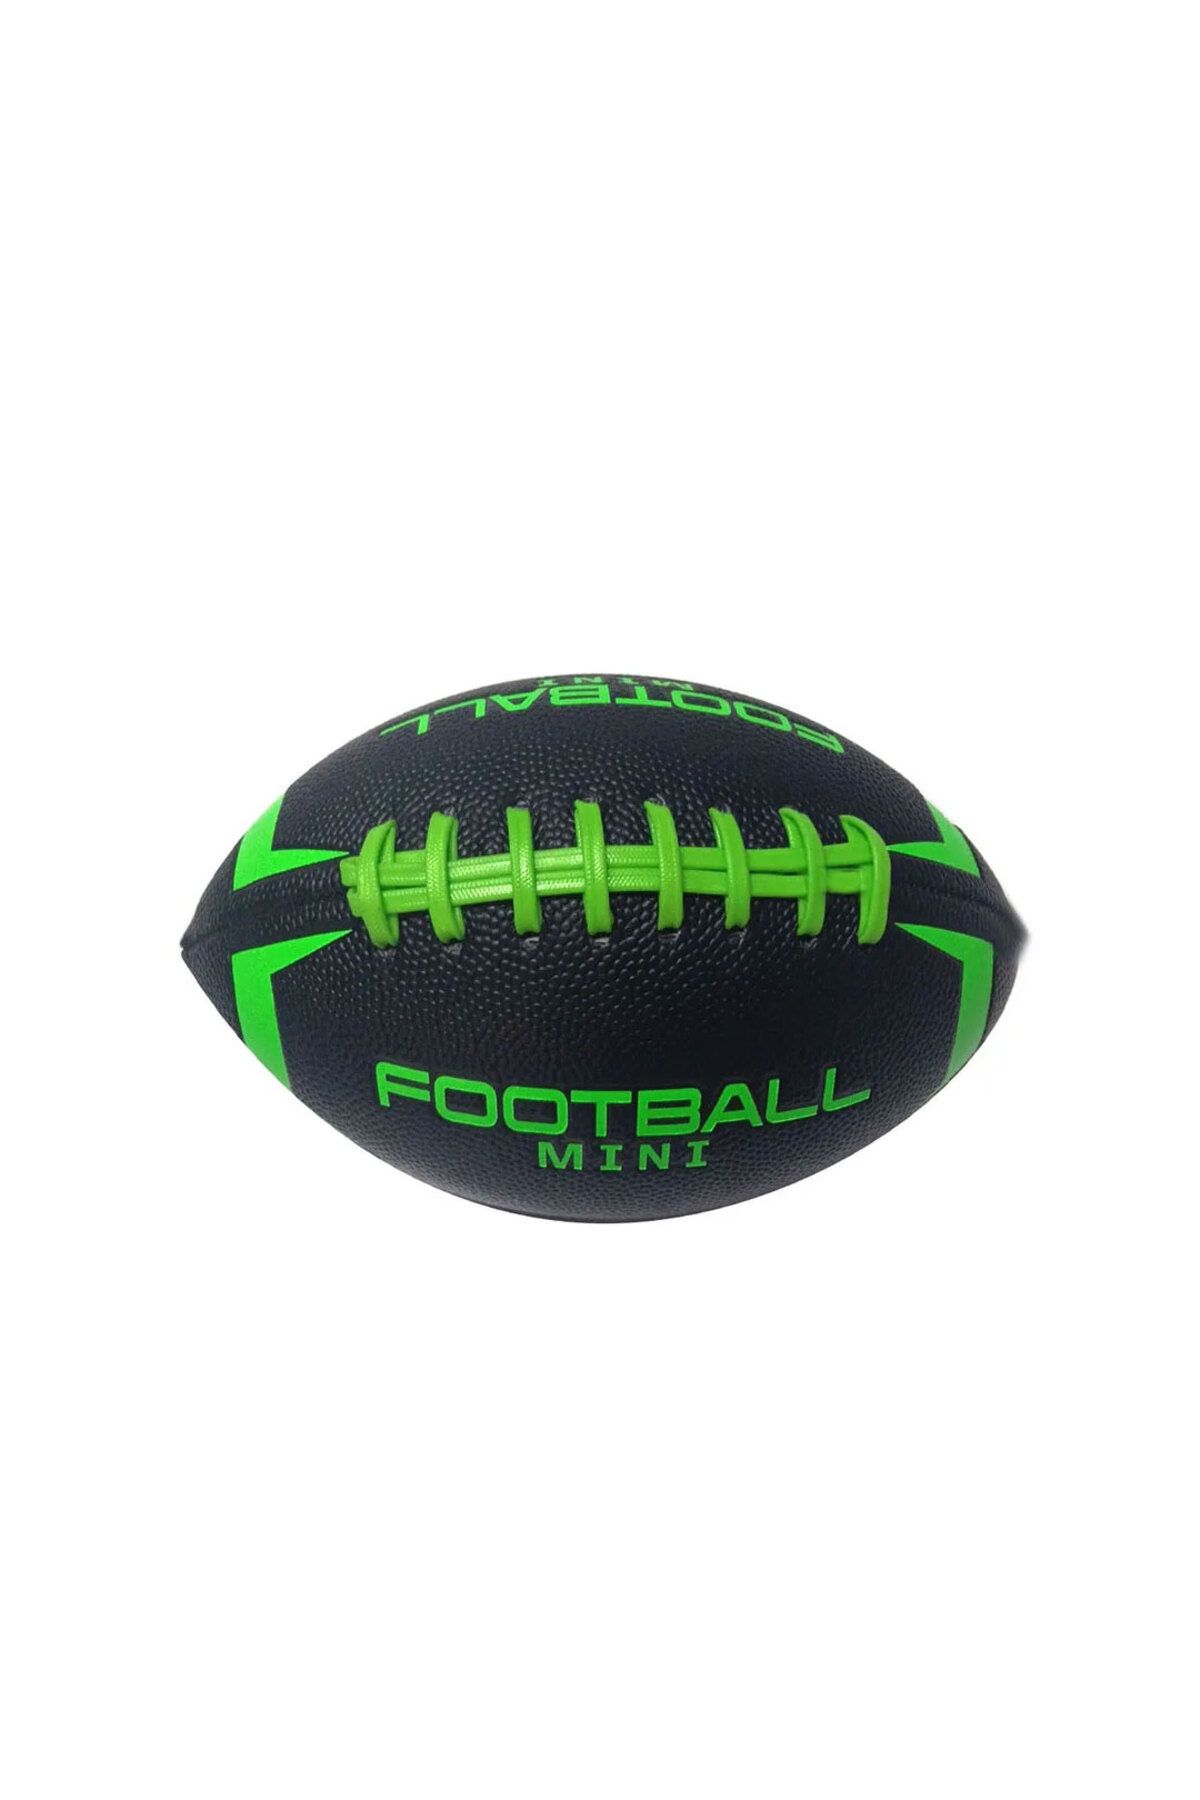 OYUNCAK STORE Eğlence Futbol Rugby Topu - Gençler yetişkinler için Kaliteli Futbol American Futbol Topu